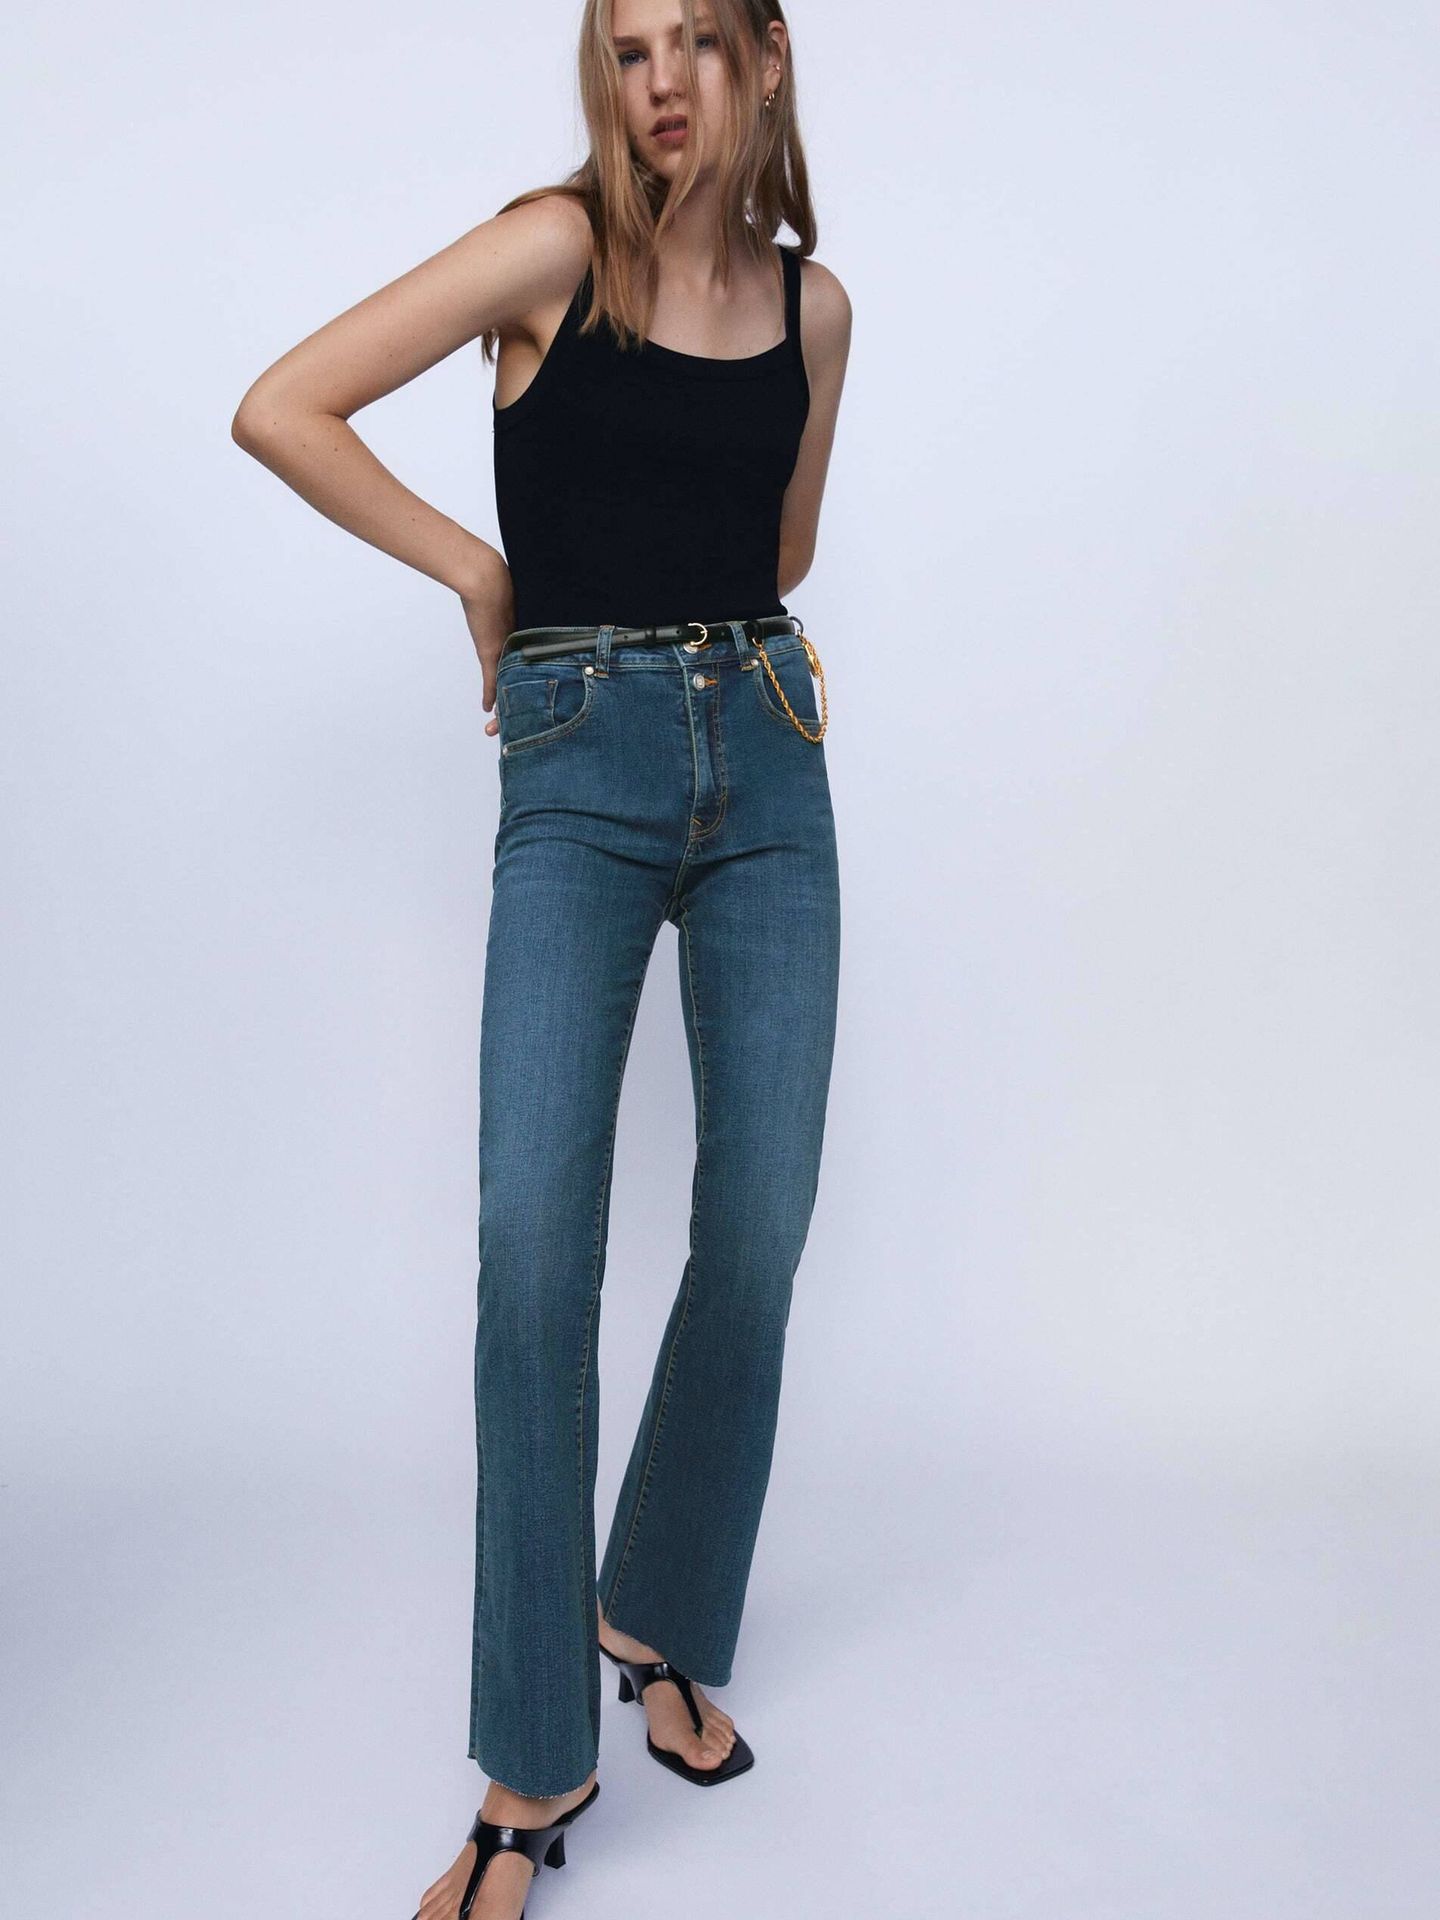 Solo Zara podía crear jeans de campana que hacen alta incluso a las bajitas